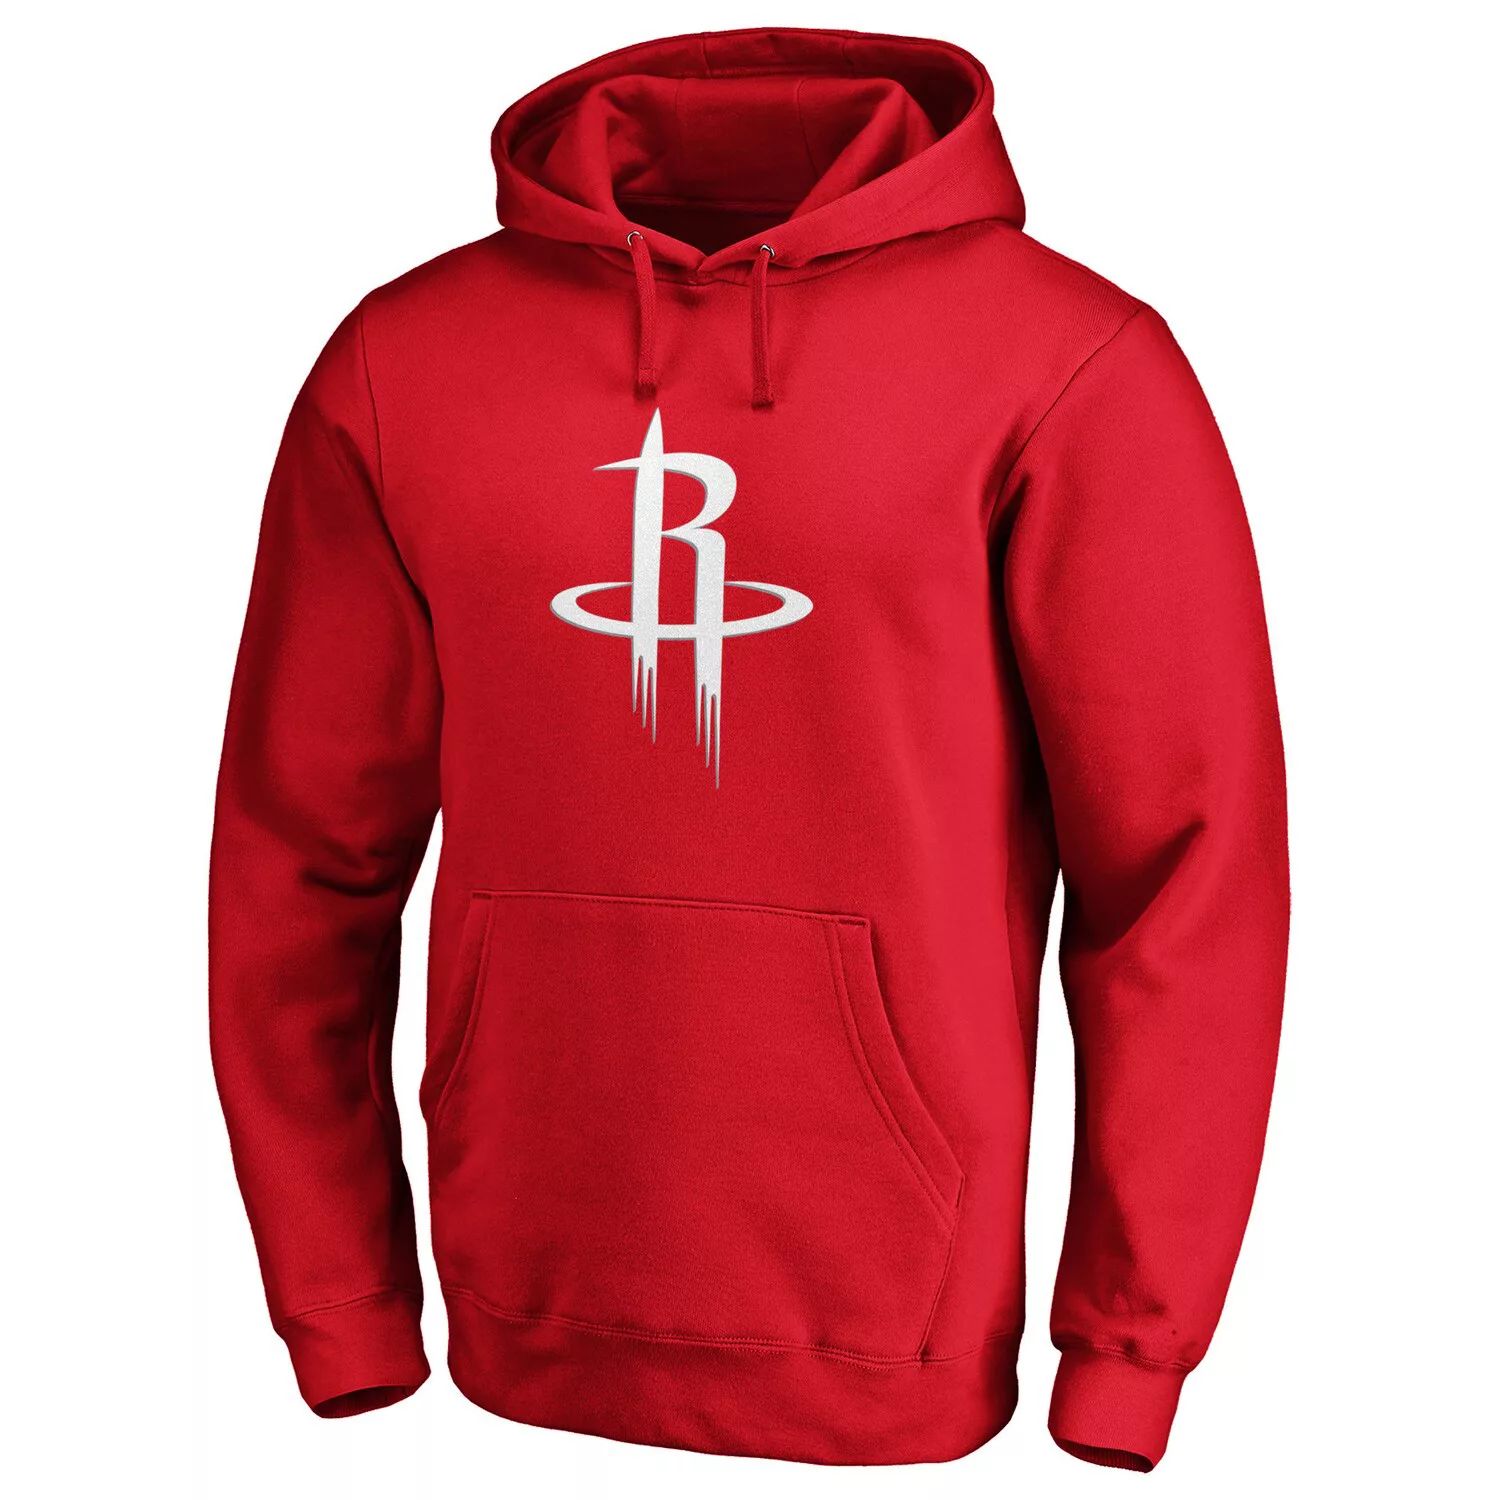 Мужской красный пуловер с капюшоном и логотипом команды Houston Rockets Primary Team Fanatics